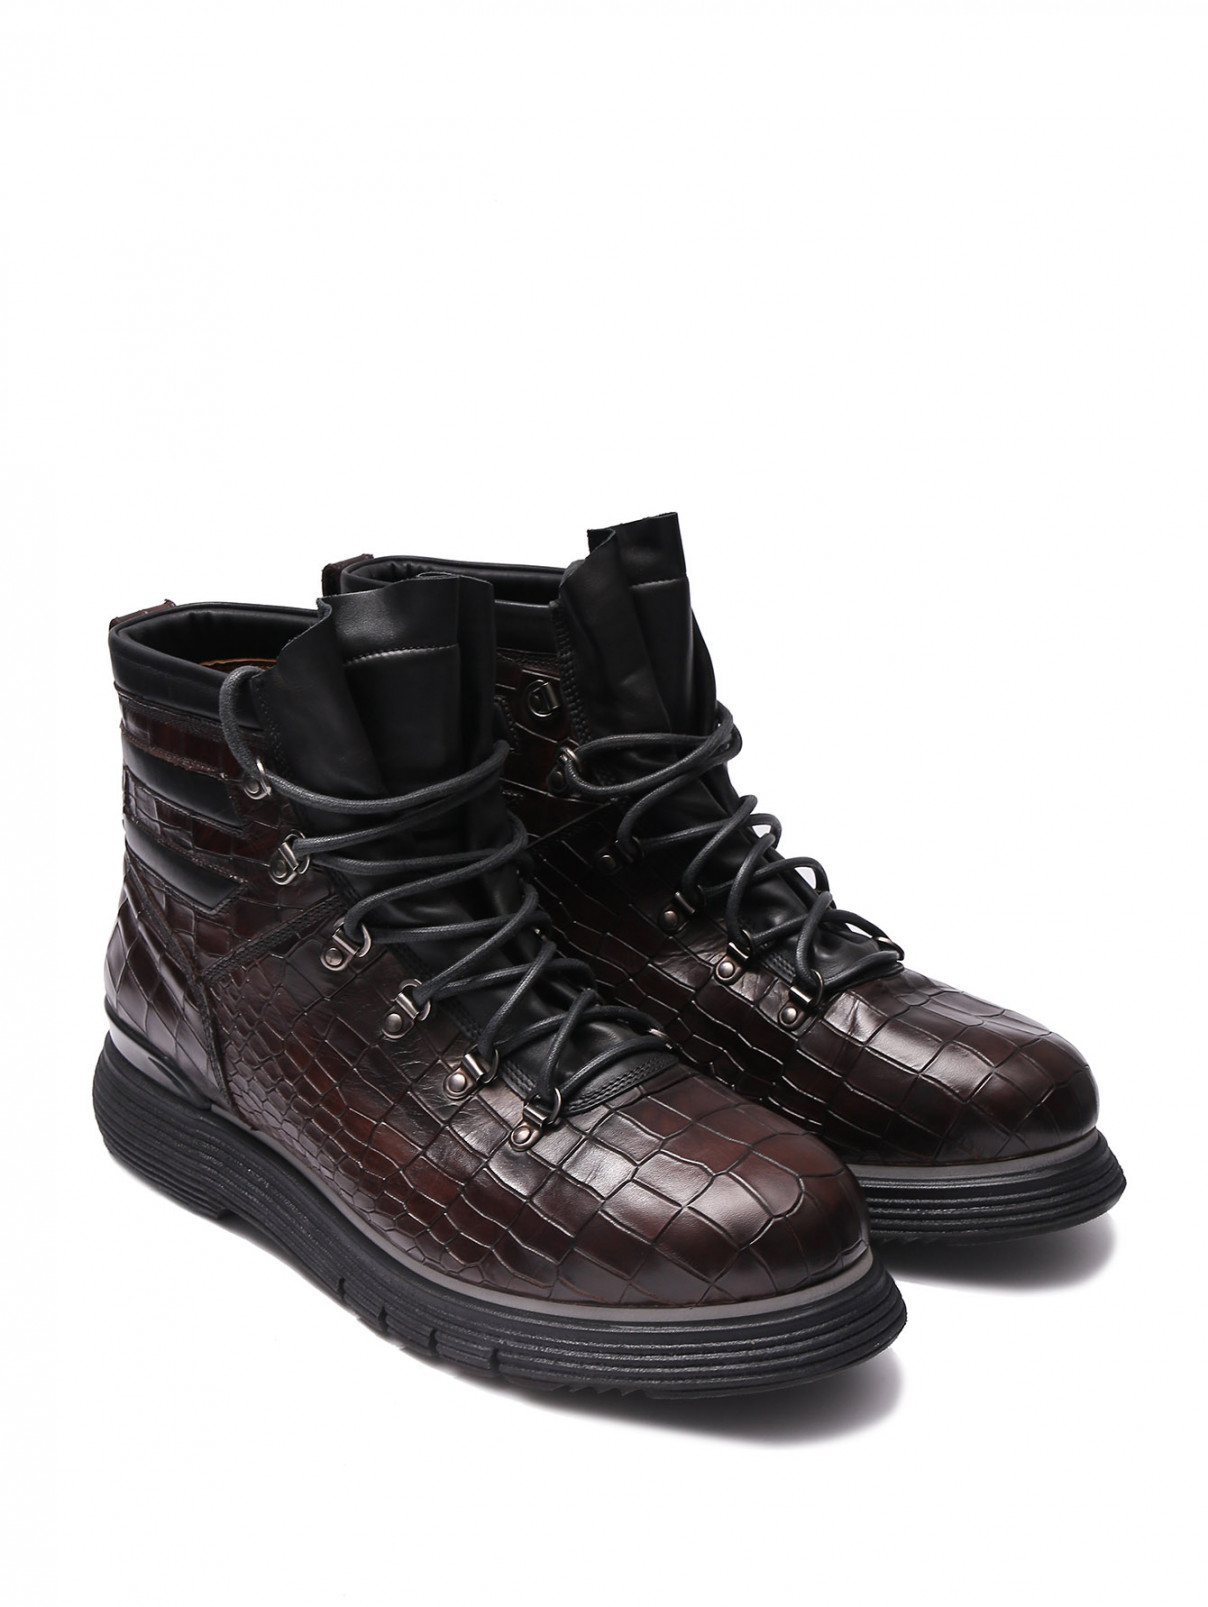 Ботинки из фактурной кожи на шнурках Franceschetti  –  Общий вид  – Цвет:  Коричневый